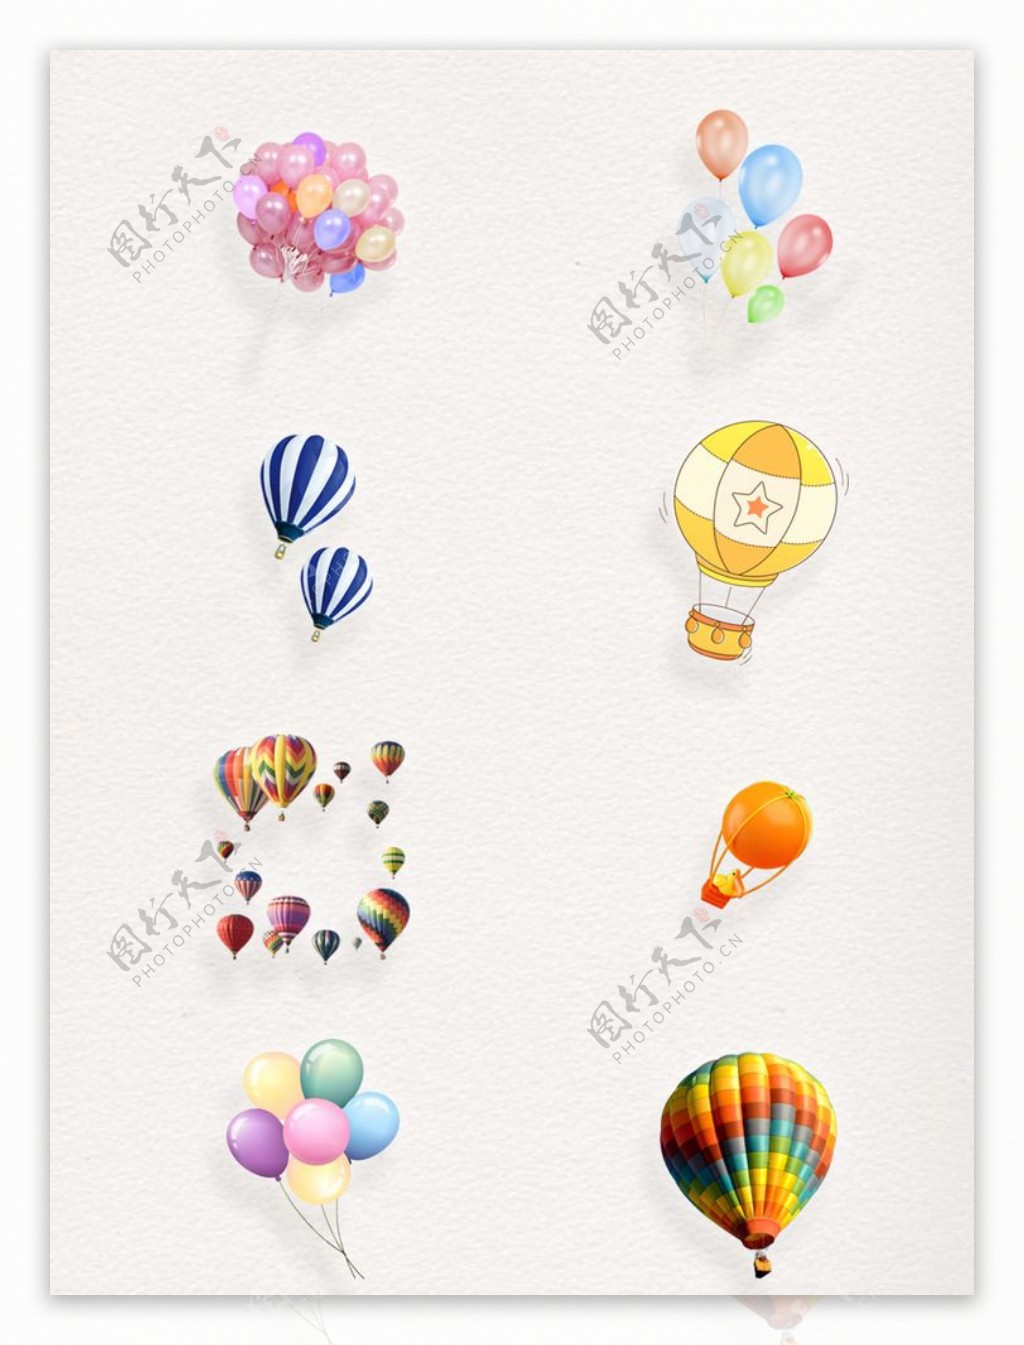 可爱氢气球彩色透明装饰素材合集